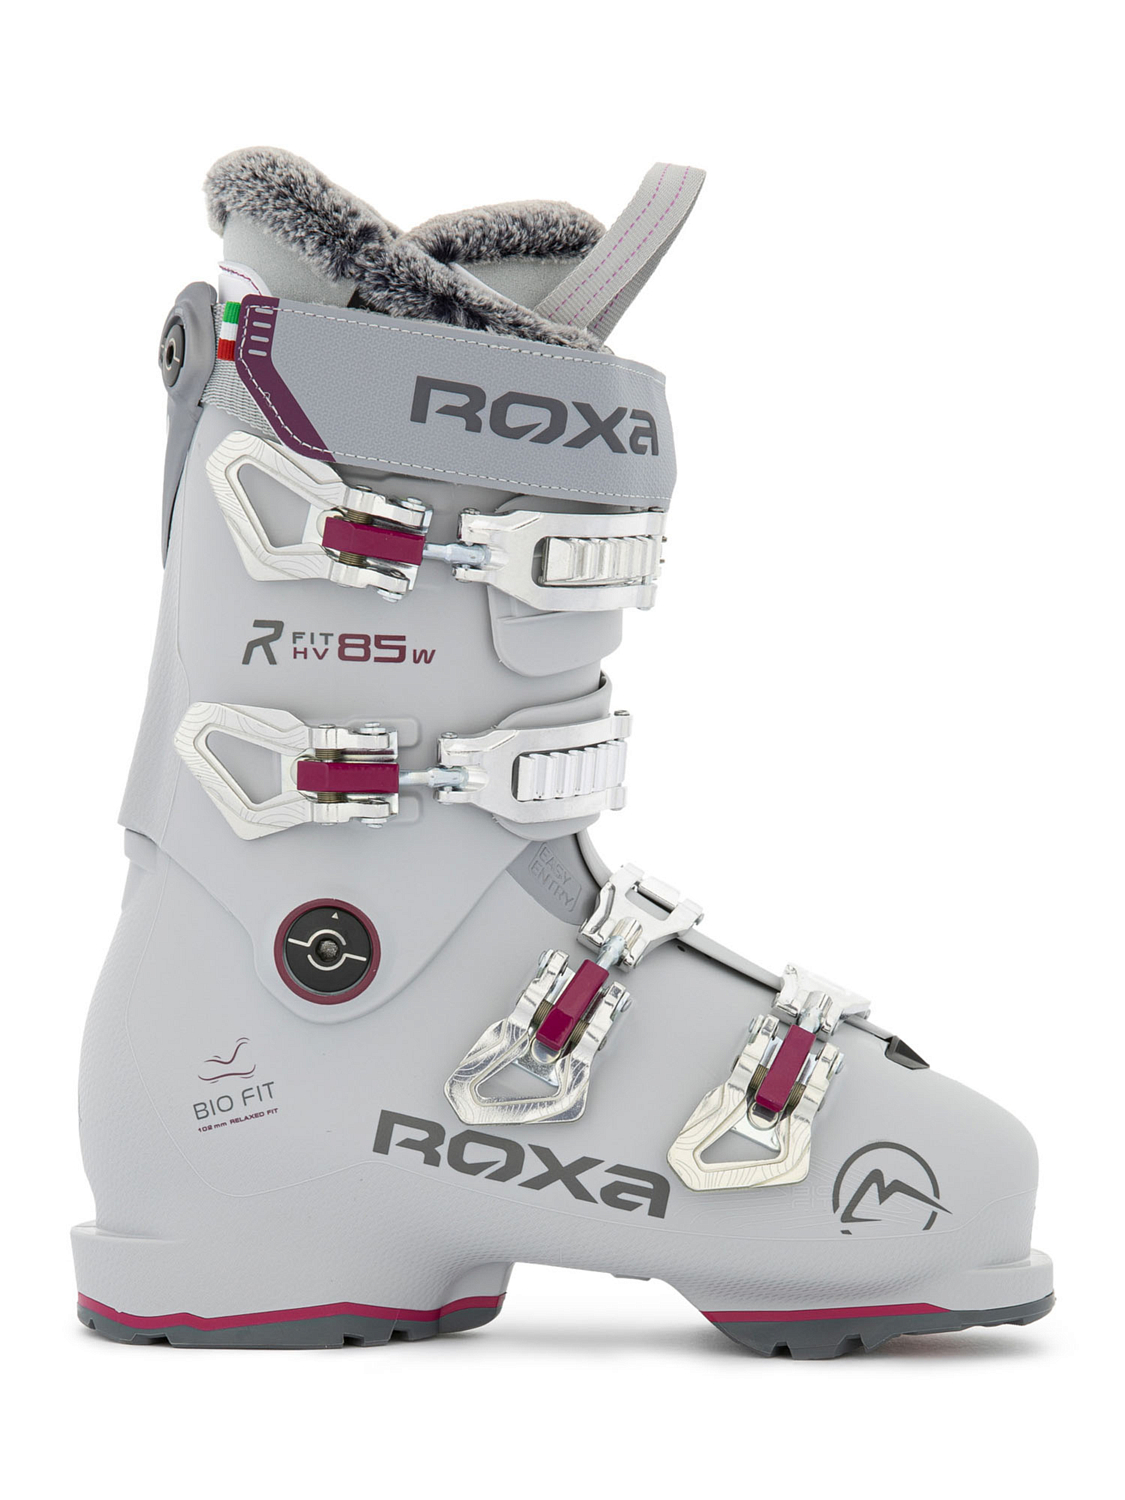 Горнолыжные ботинки ROXA Rfit W 85 Gw Lt Grey/Plum